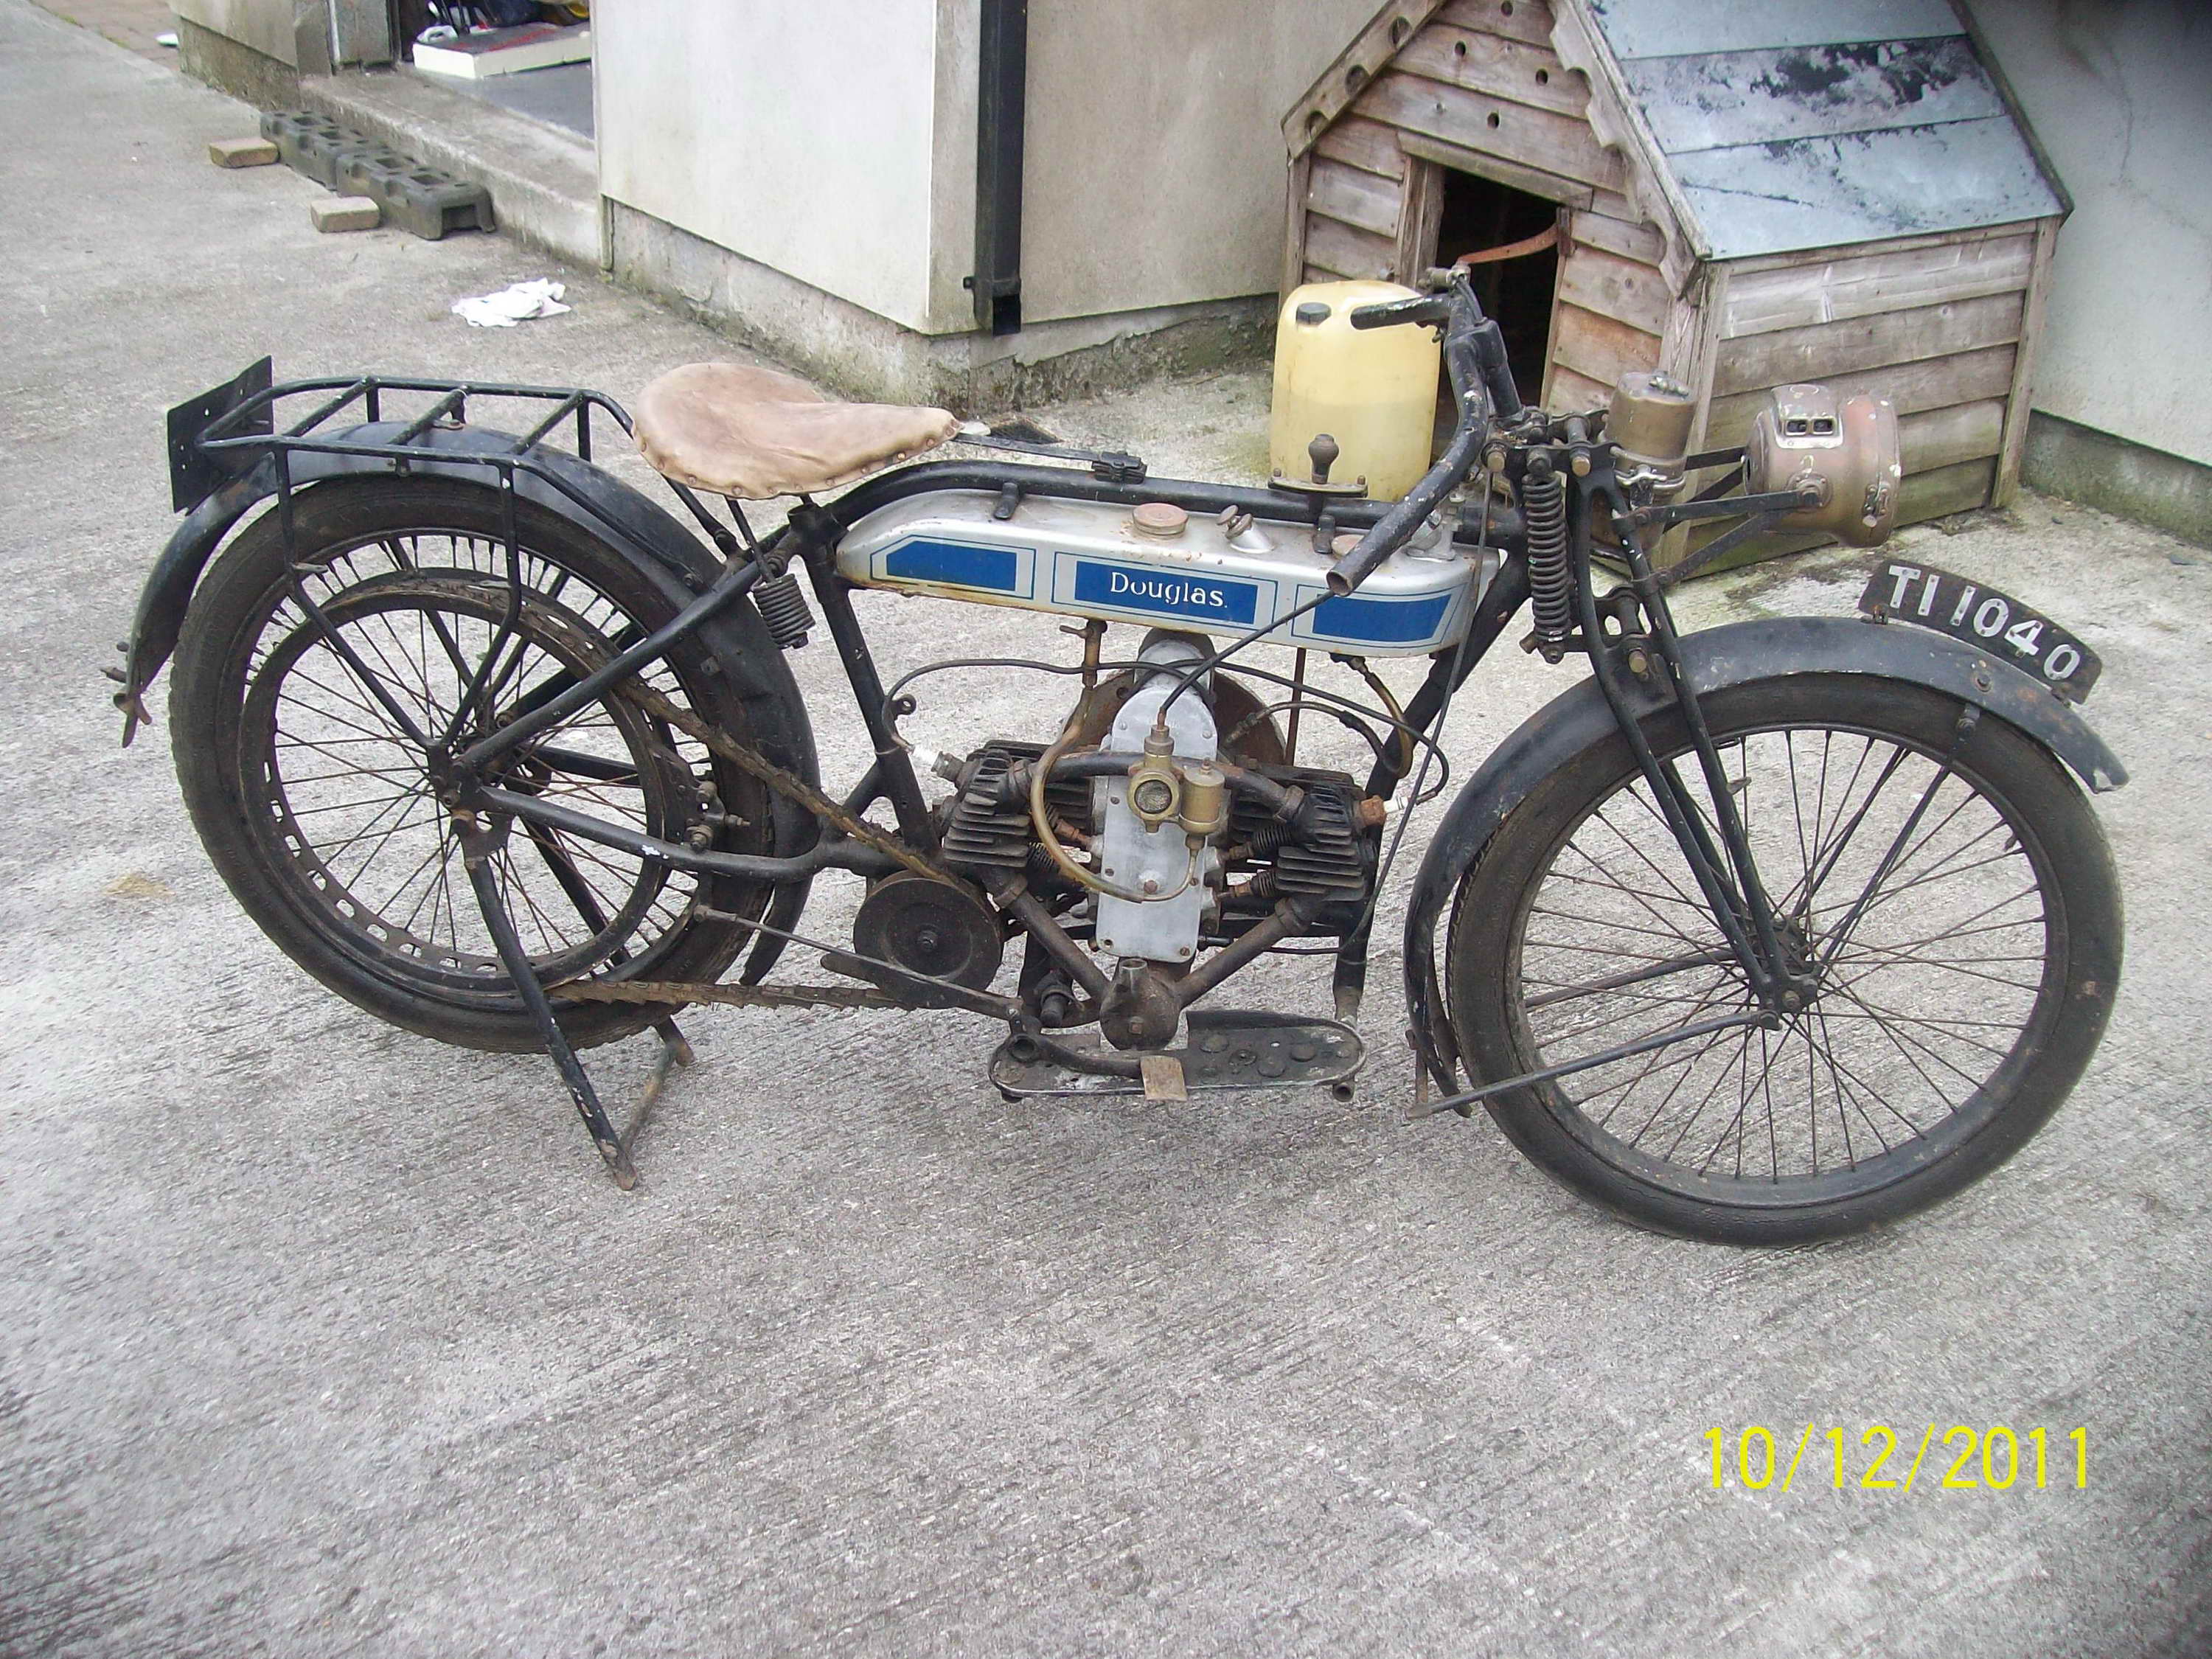 www.douglasmotorcycles.net/aa-files/images/kieran-duffy/2012/1924-douglas-2-3000.JPG